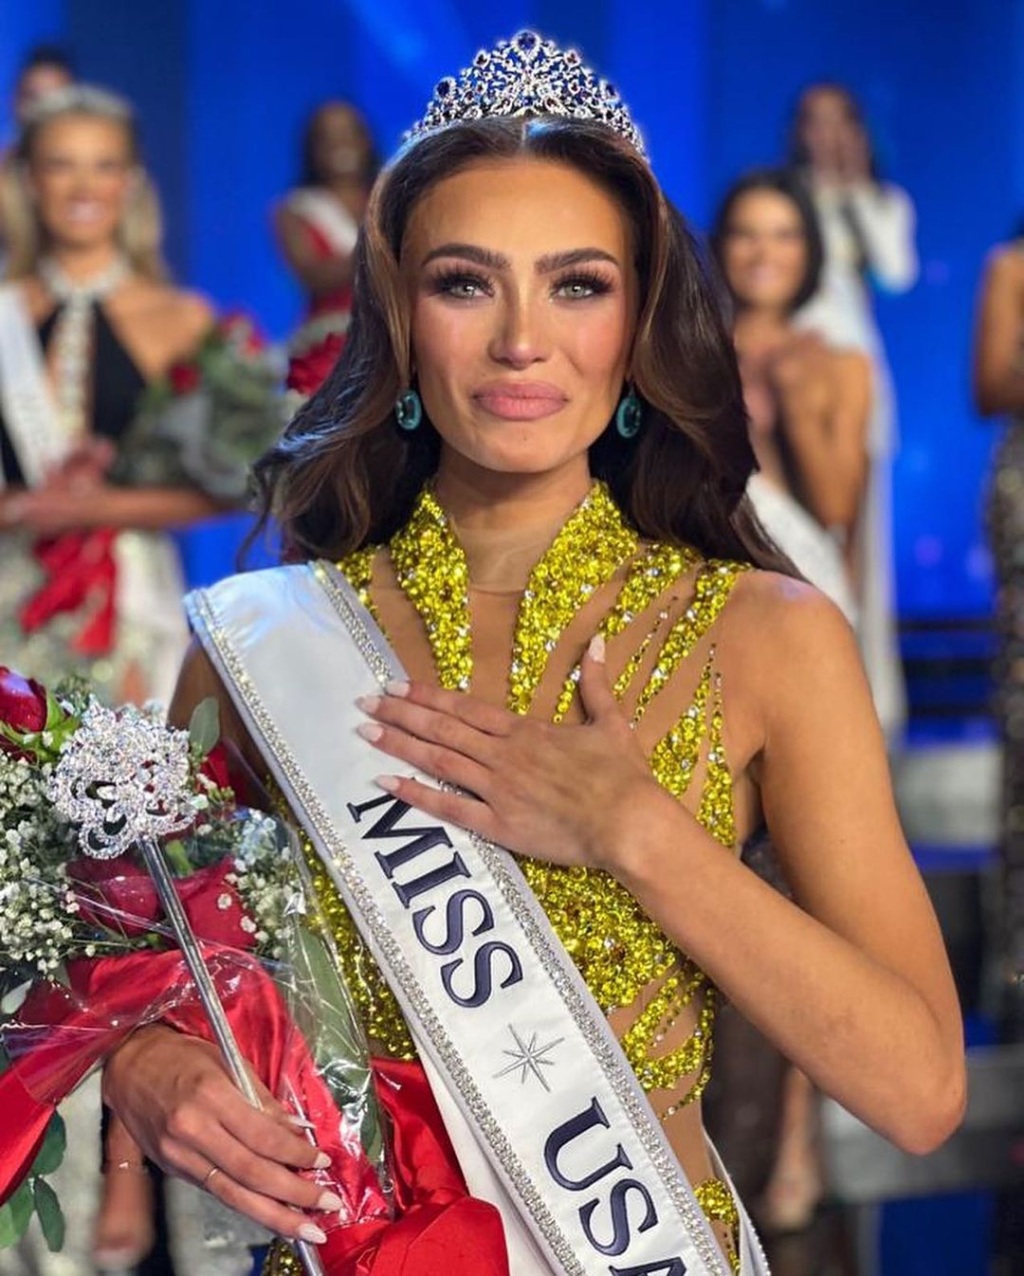 La venezolana Noelia Voigt renunció a su título de Miss Estados Unidos 2023